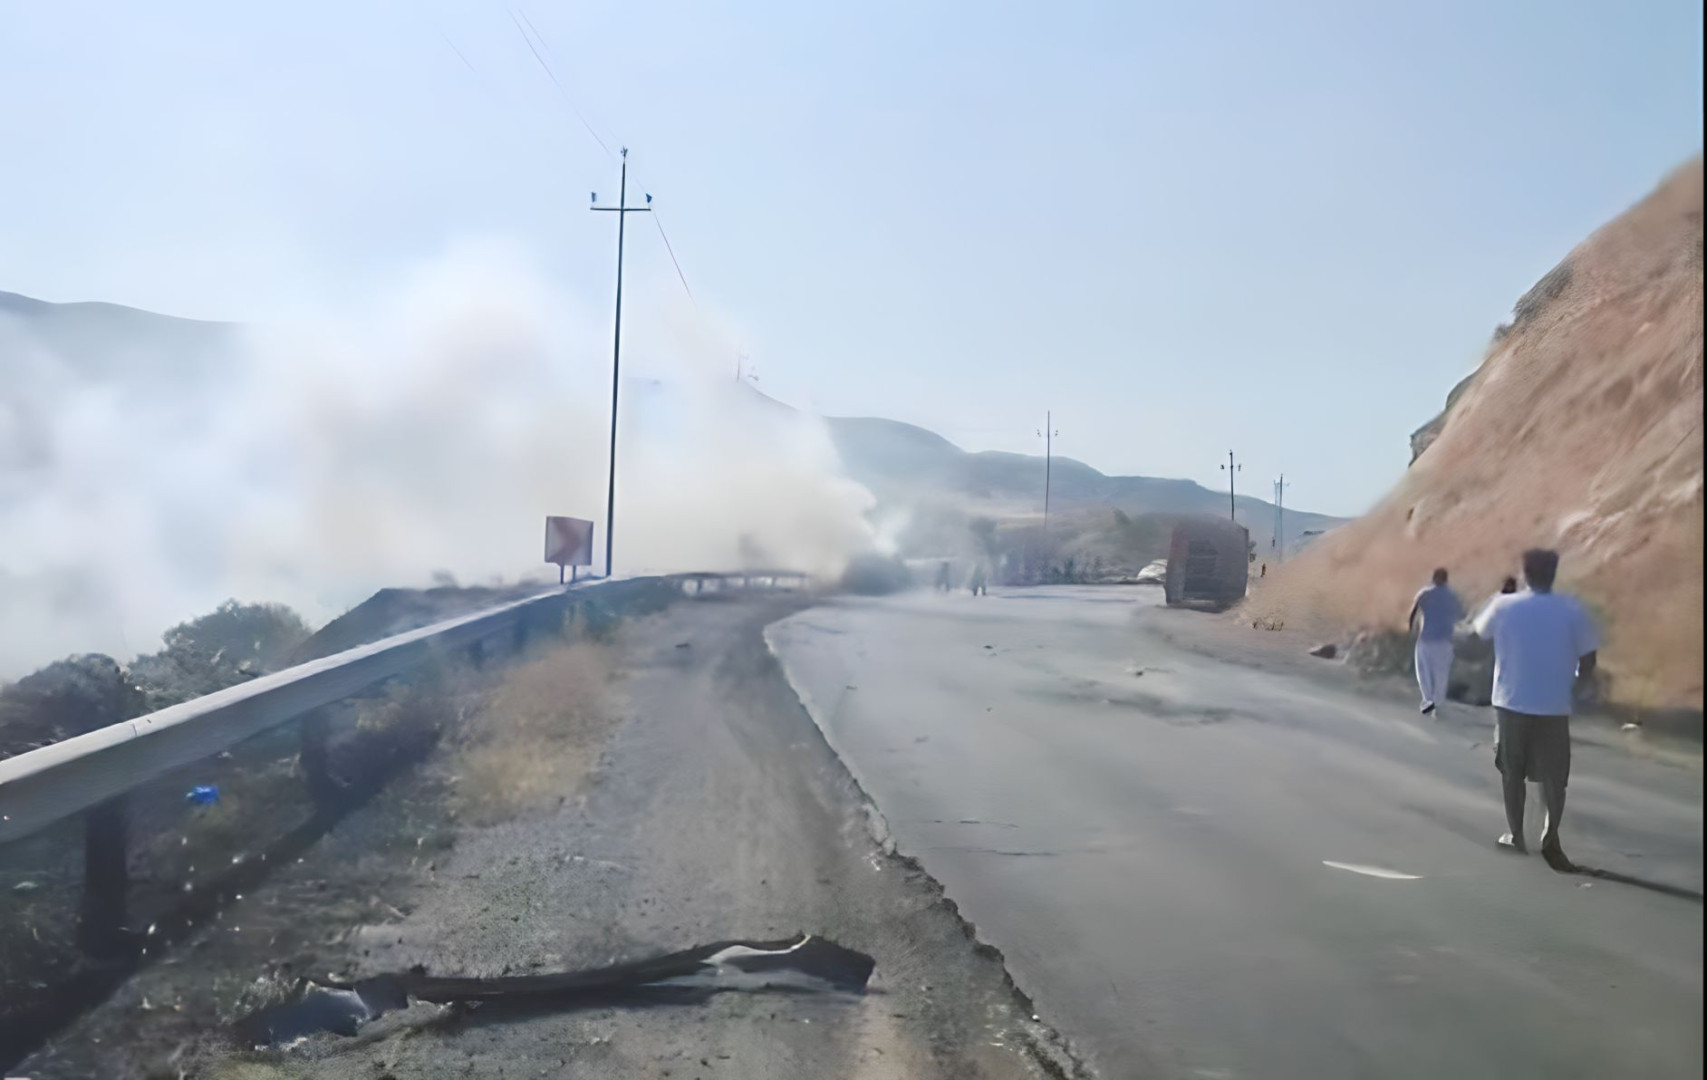 Turkish UAV targets civilian vehicle near al-Sulaymaniyah